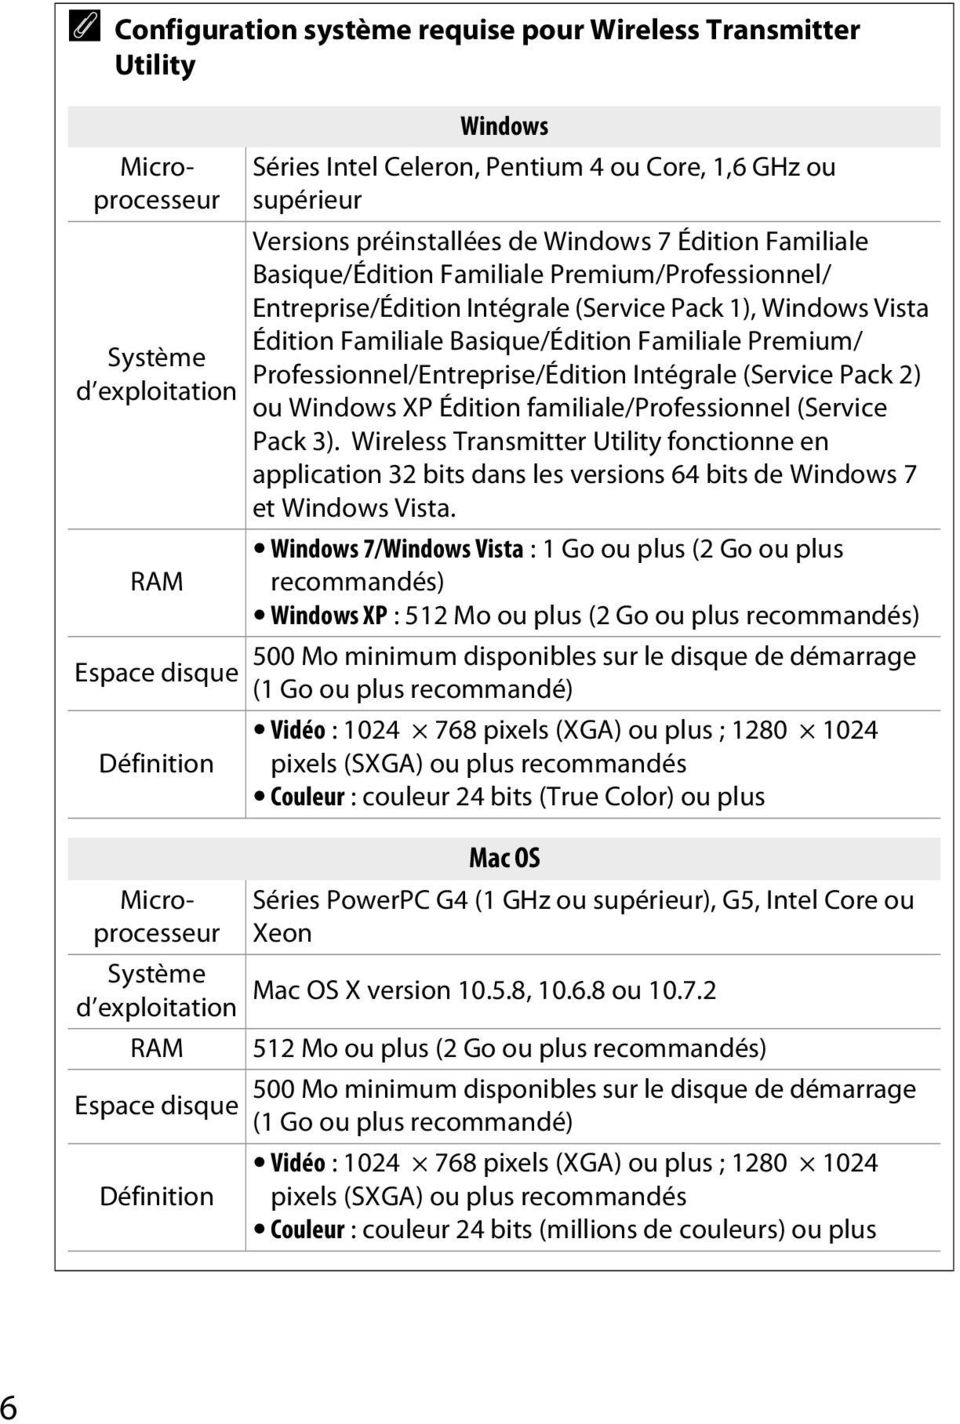 Entreprise/Édition Intégrale (Service Pack 1), Windows Vista Édition Familiale Basique/Édition Familiale Premium/ Professionnel/Entreprise/Édition Intégrale (Service Pack 2) ou Windows XP Édition